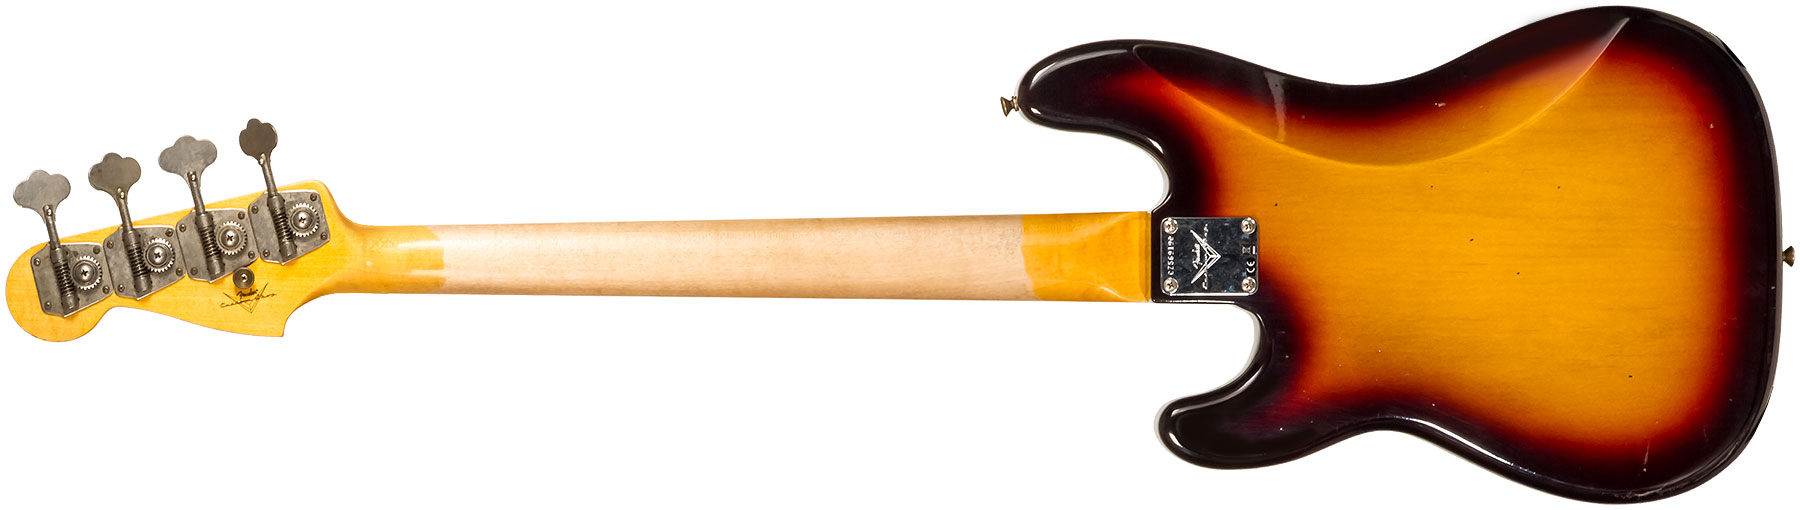 Fender Custom Shop Precision Bass 1963 Rw #cz56919 - Journeyman Relic 3-color Sunburst - Basse Électrique Solid Body - Variation 1